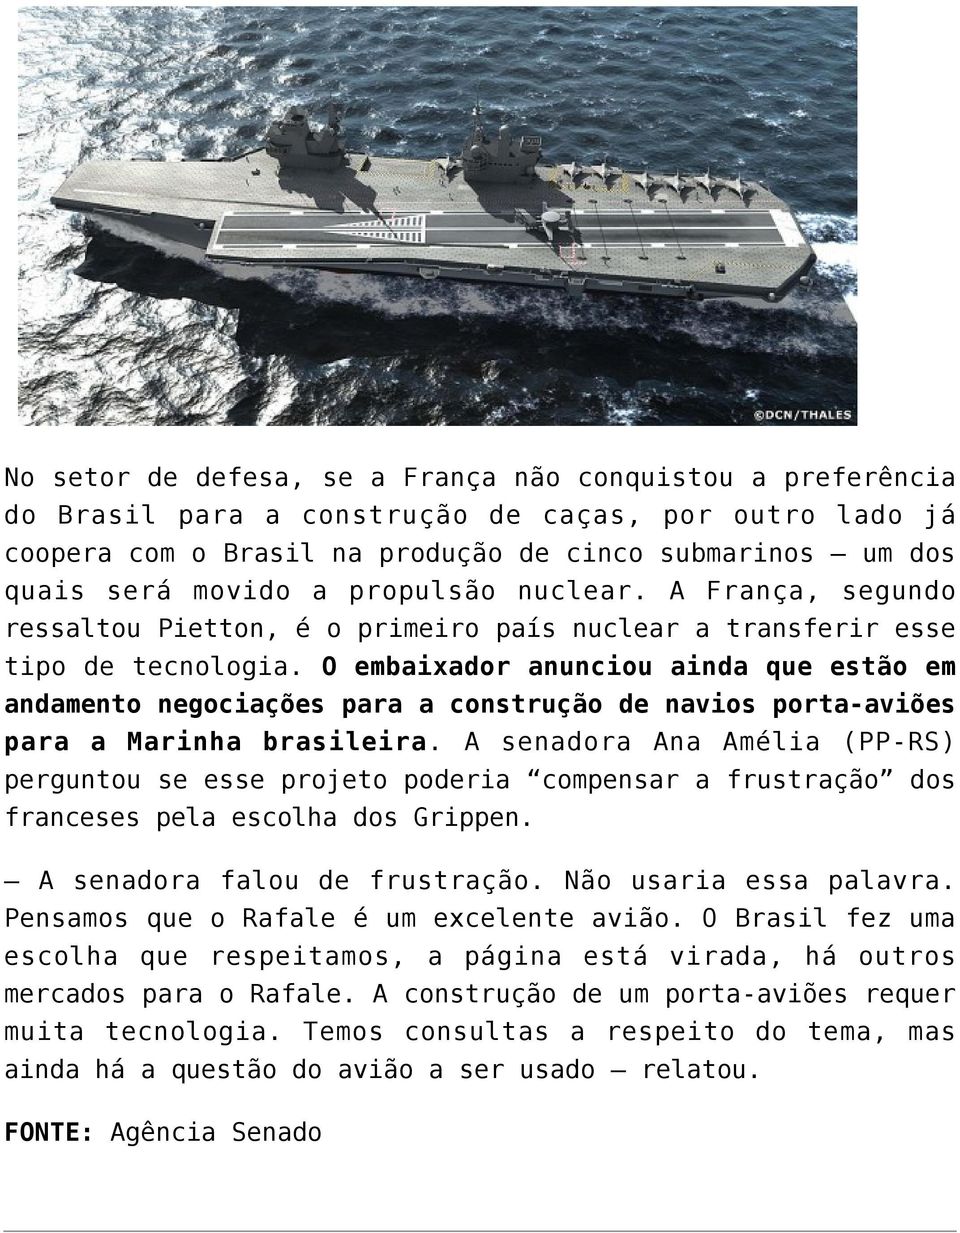 O embaixador anunciou ainda que estão em andamento negociações para a construção de navios porta-aviões para a Marinha brasileira.